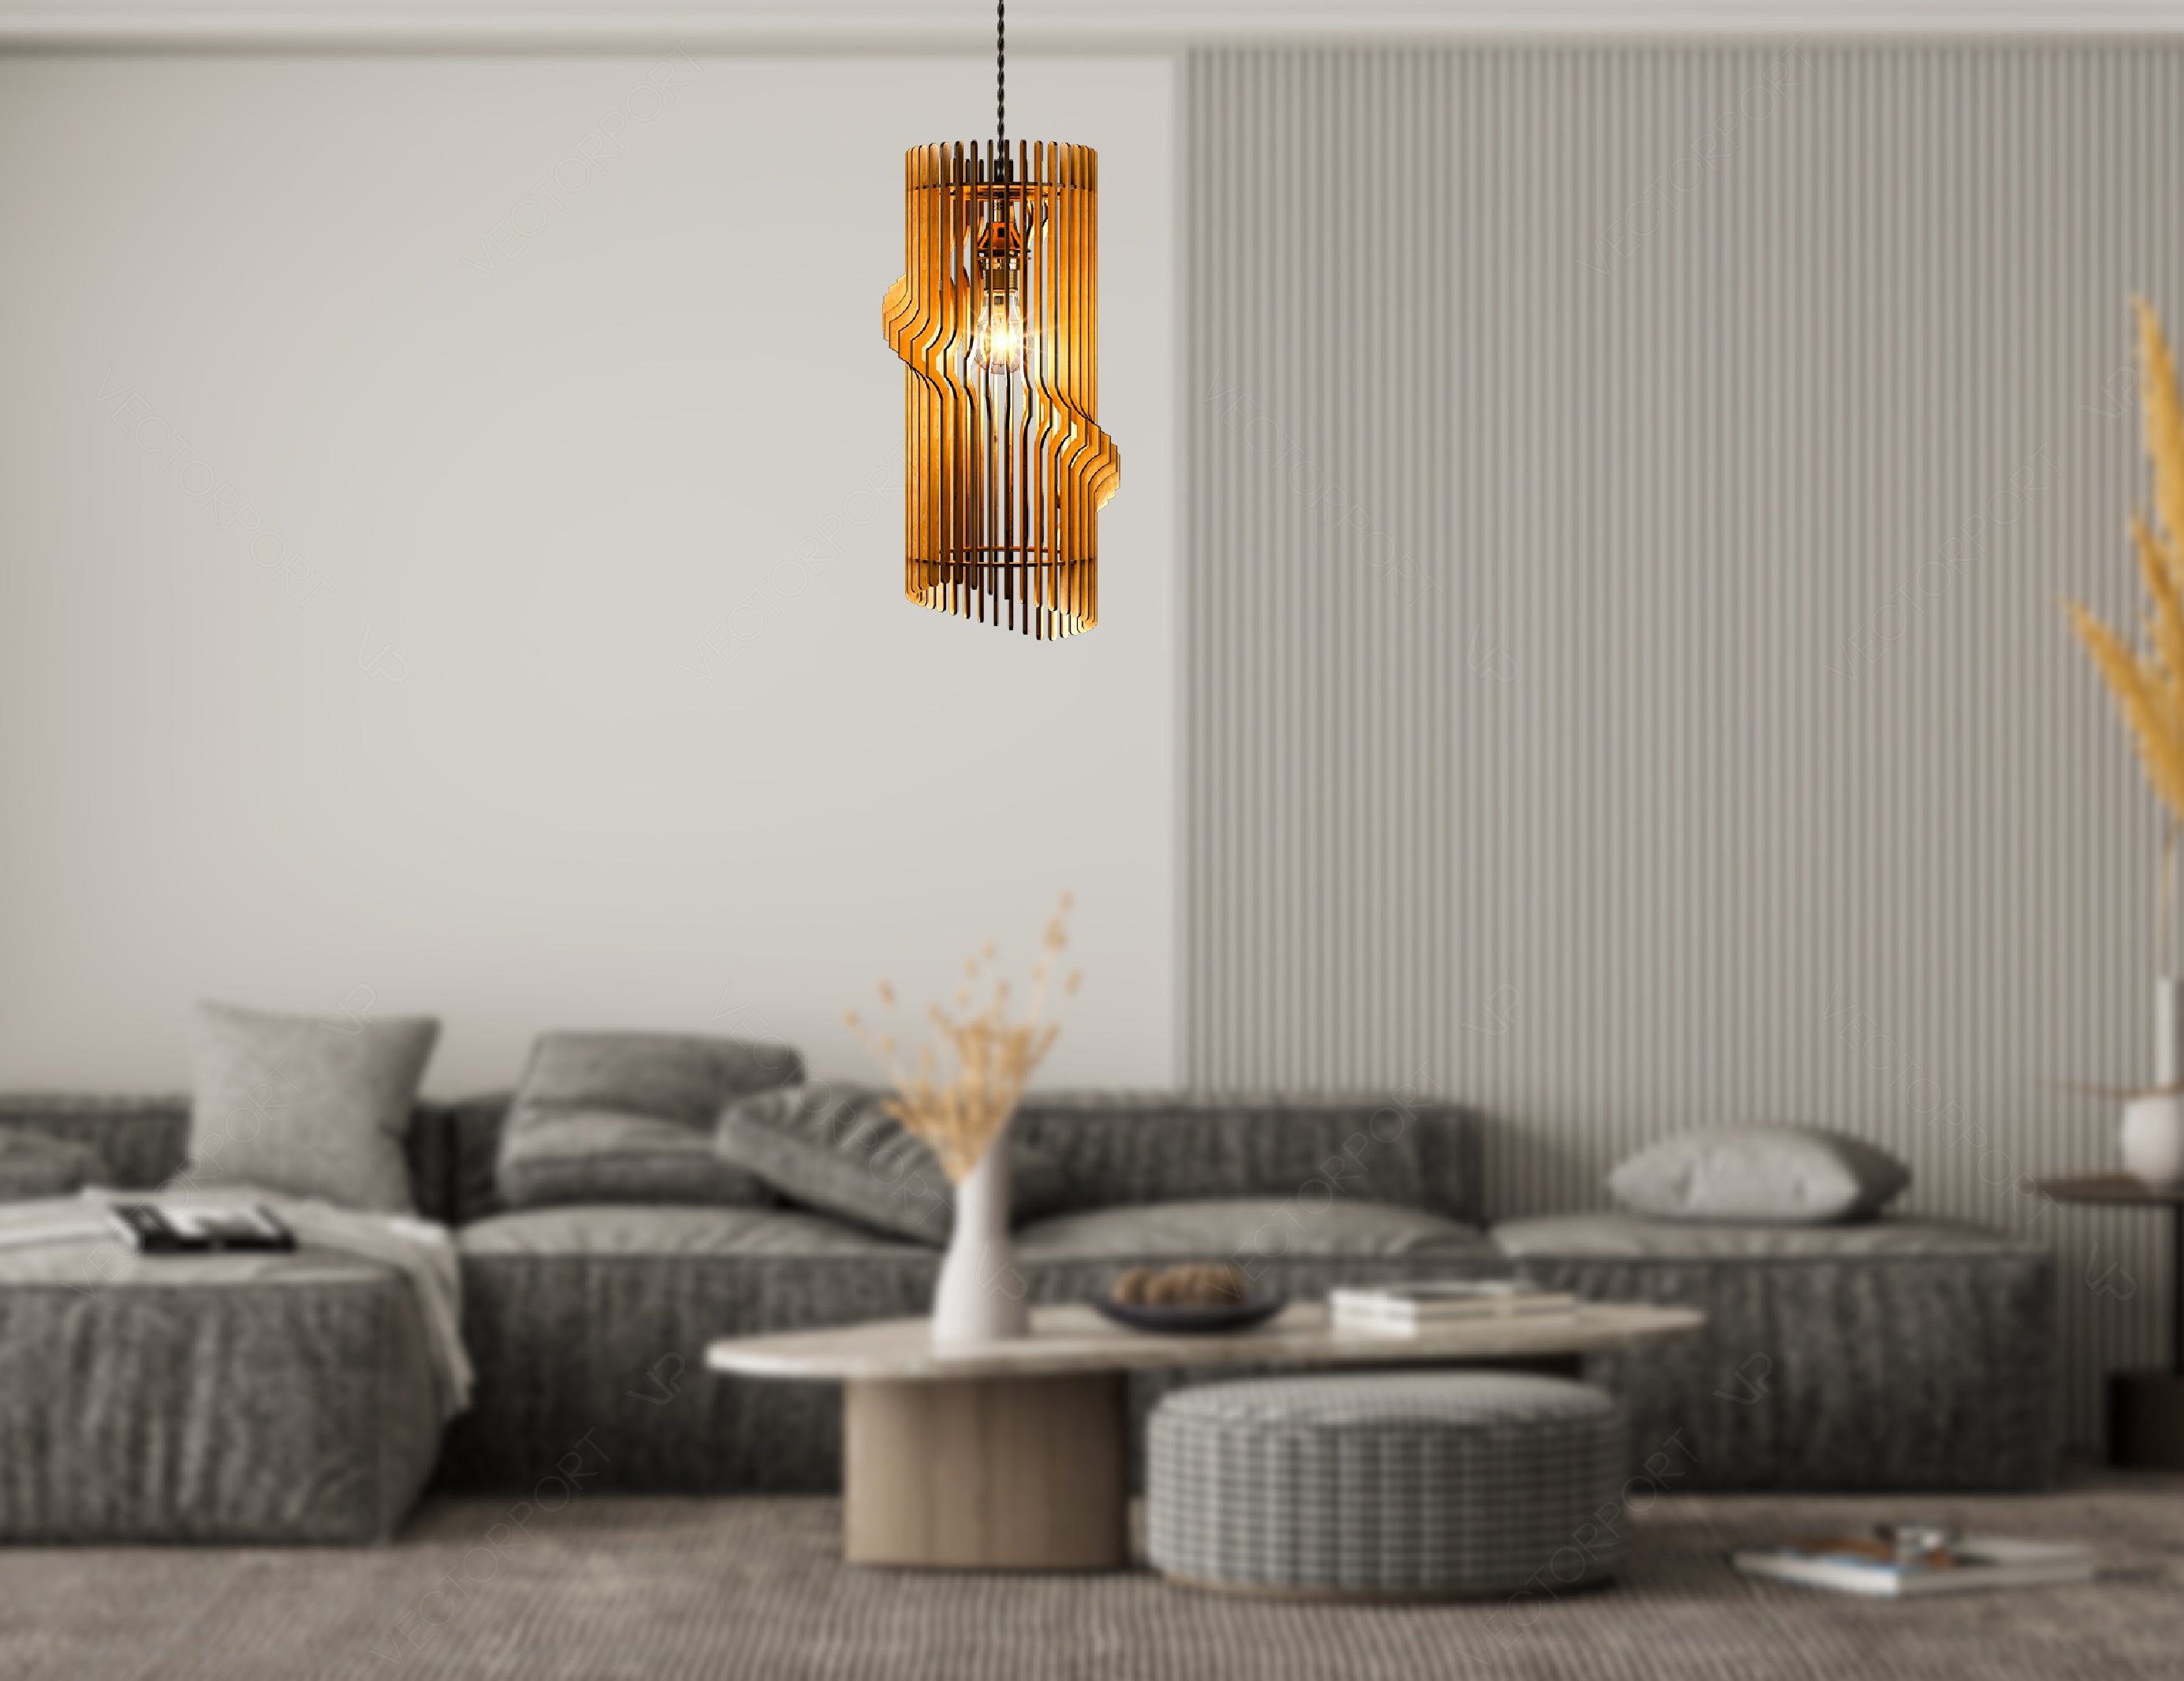 Cylinder Modern Elegant Hanging wooden chandelier lamp shade Pendant light template svg laser cut plywood |#U038|